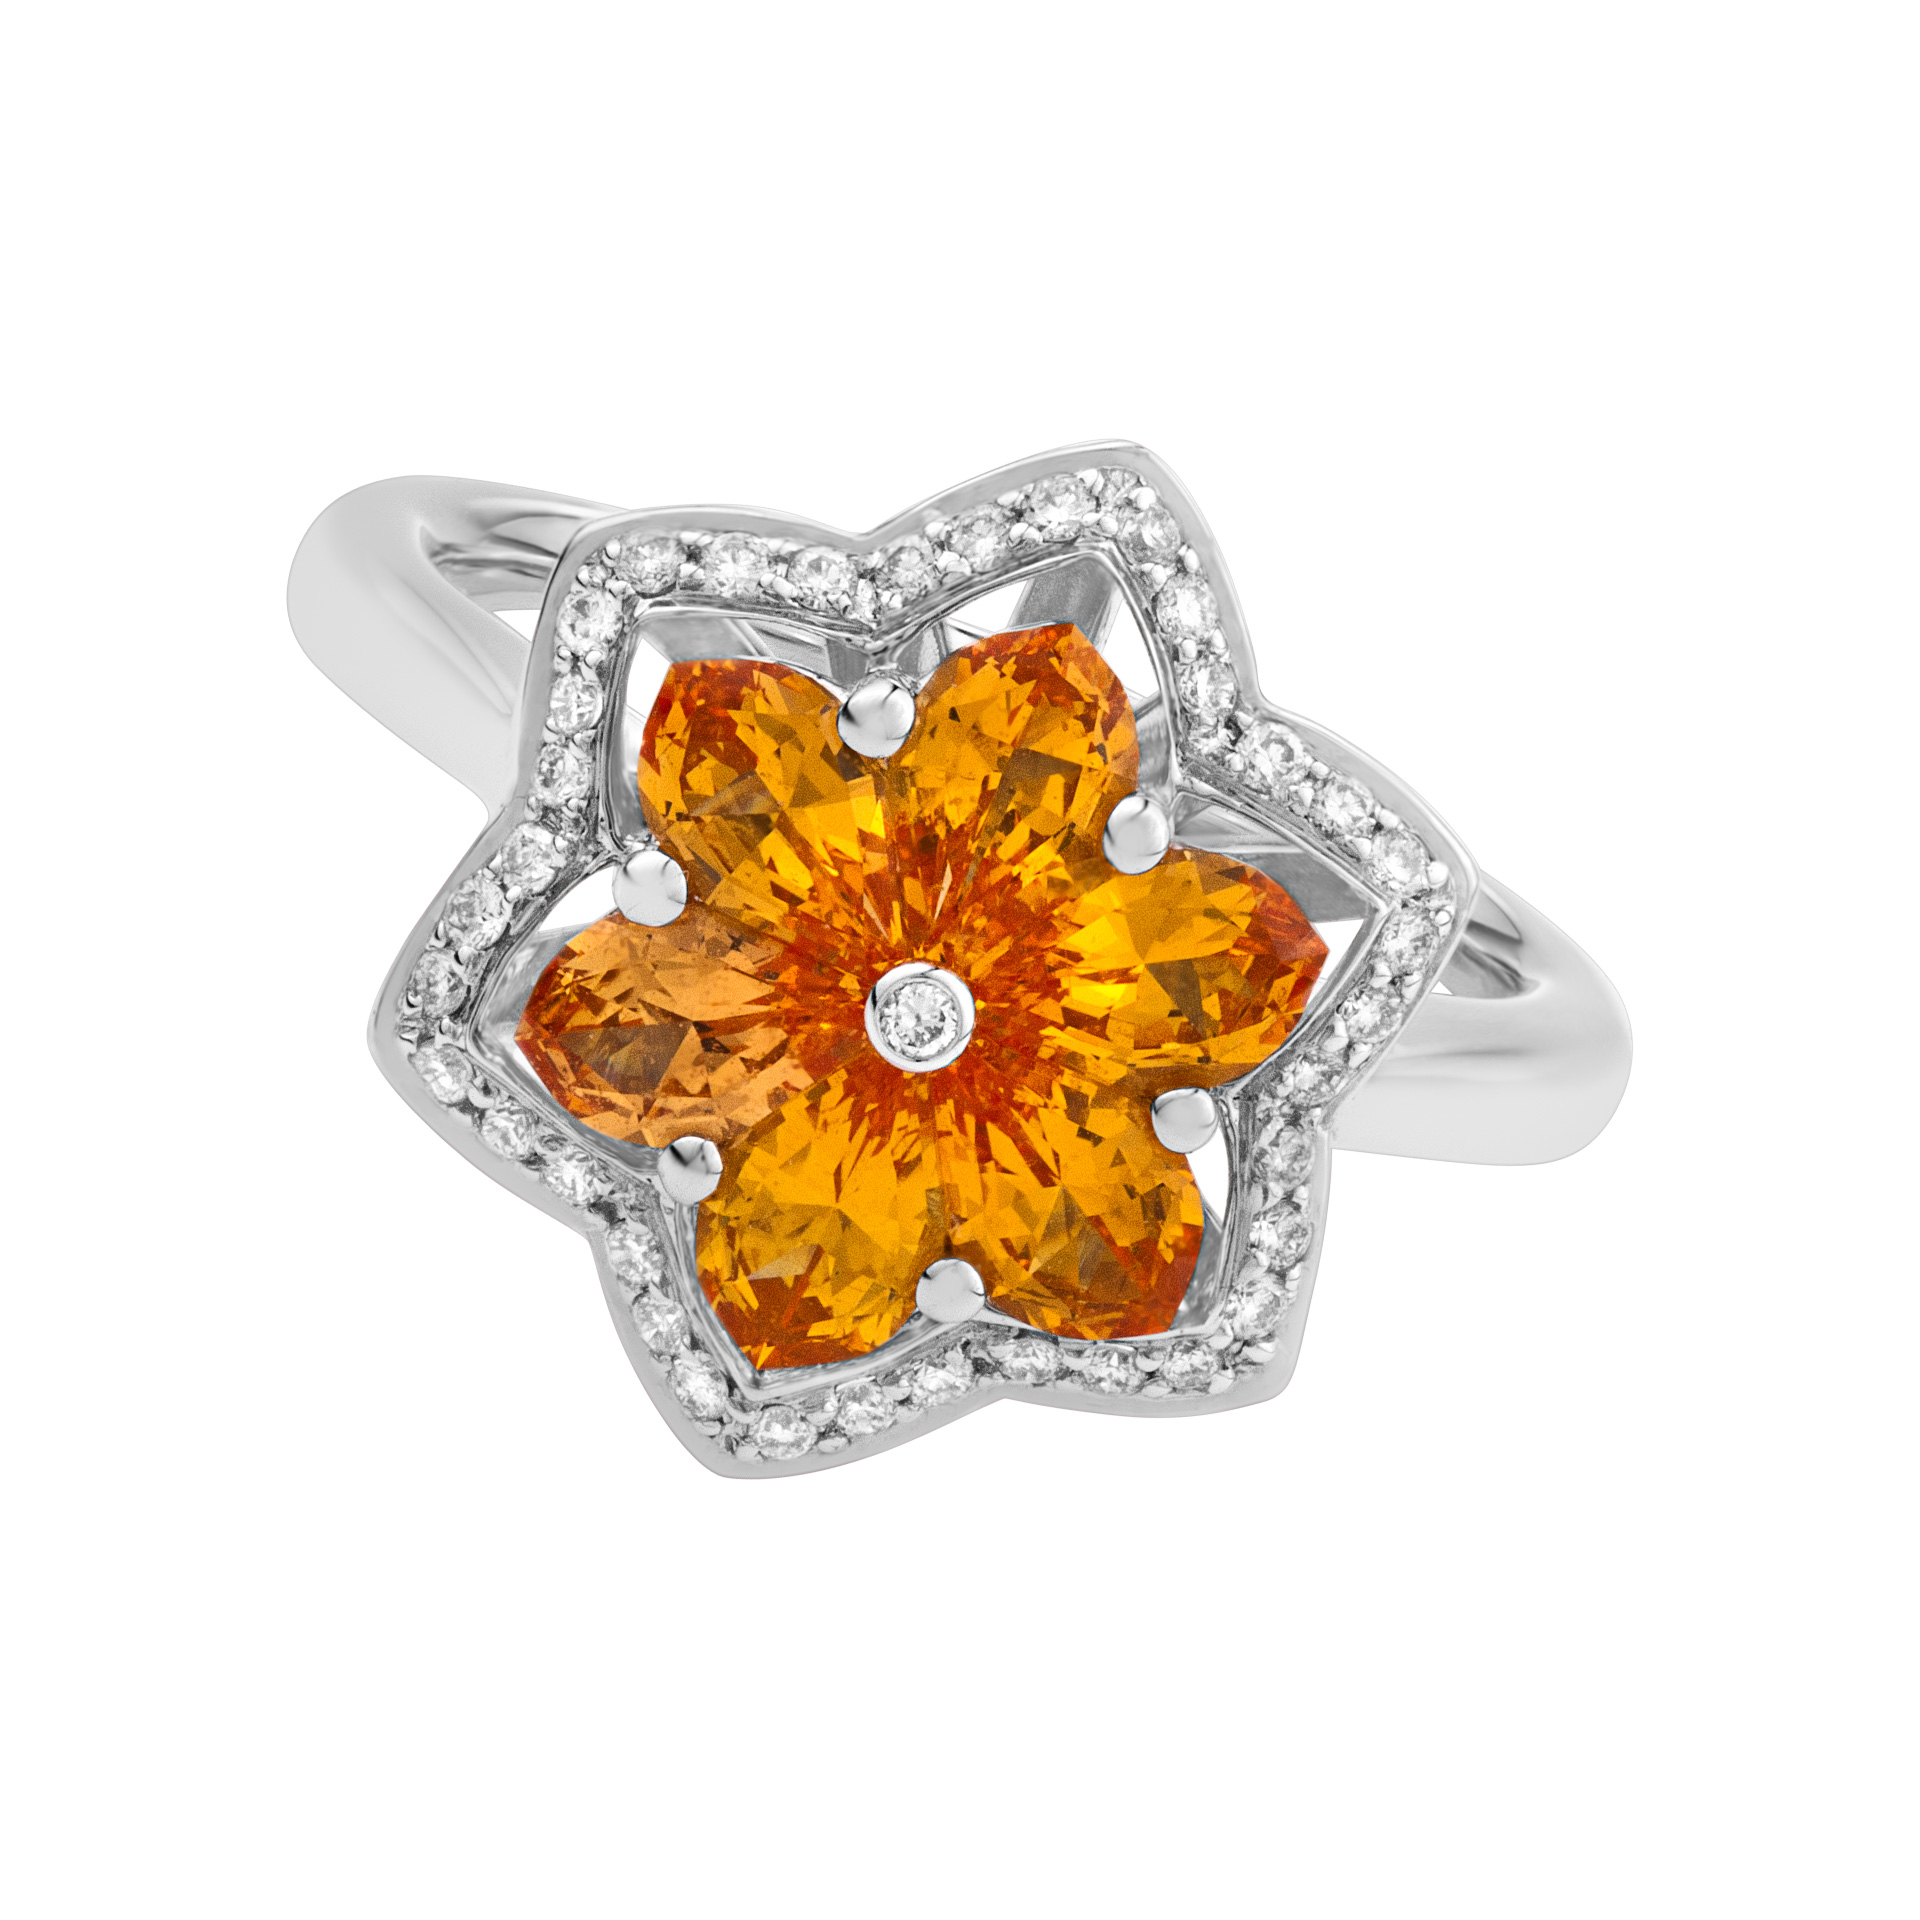 Orange sapphire & diamond flower ring in 18k white gold